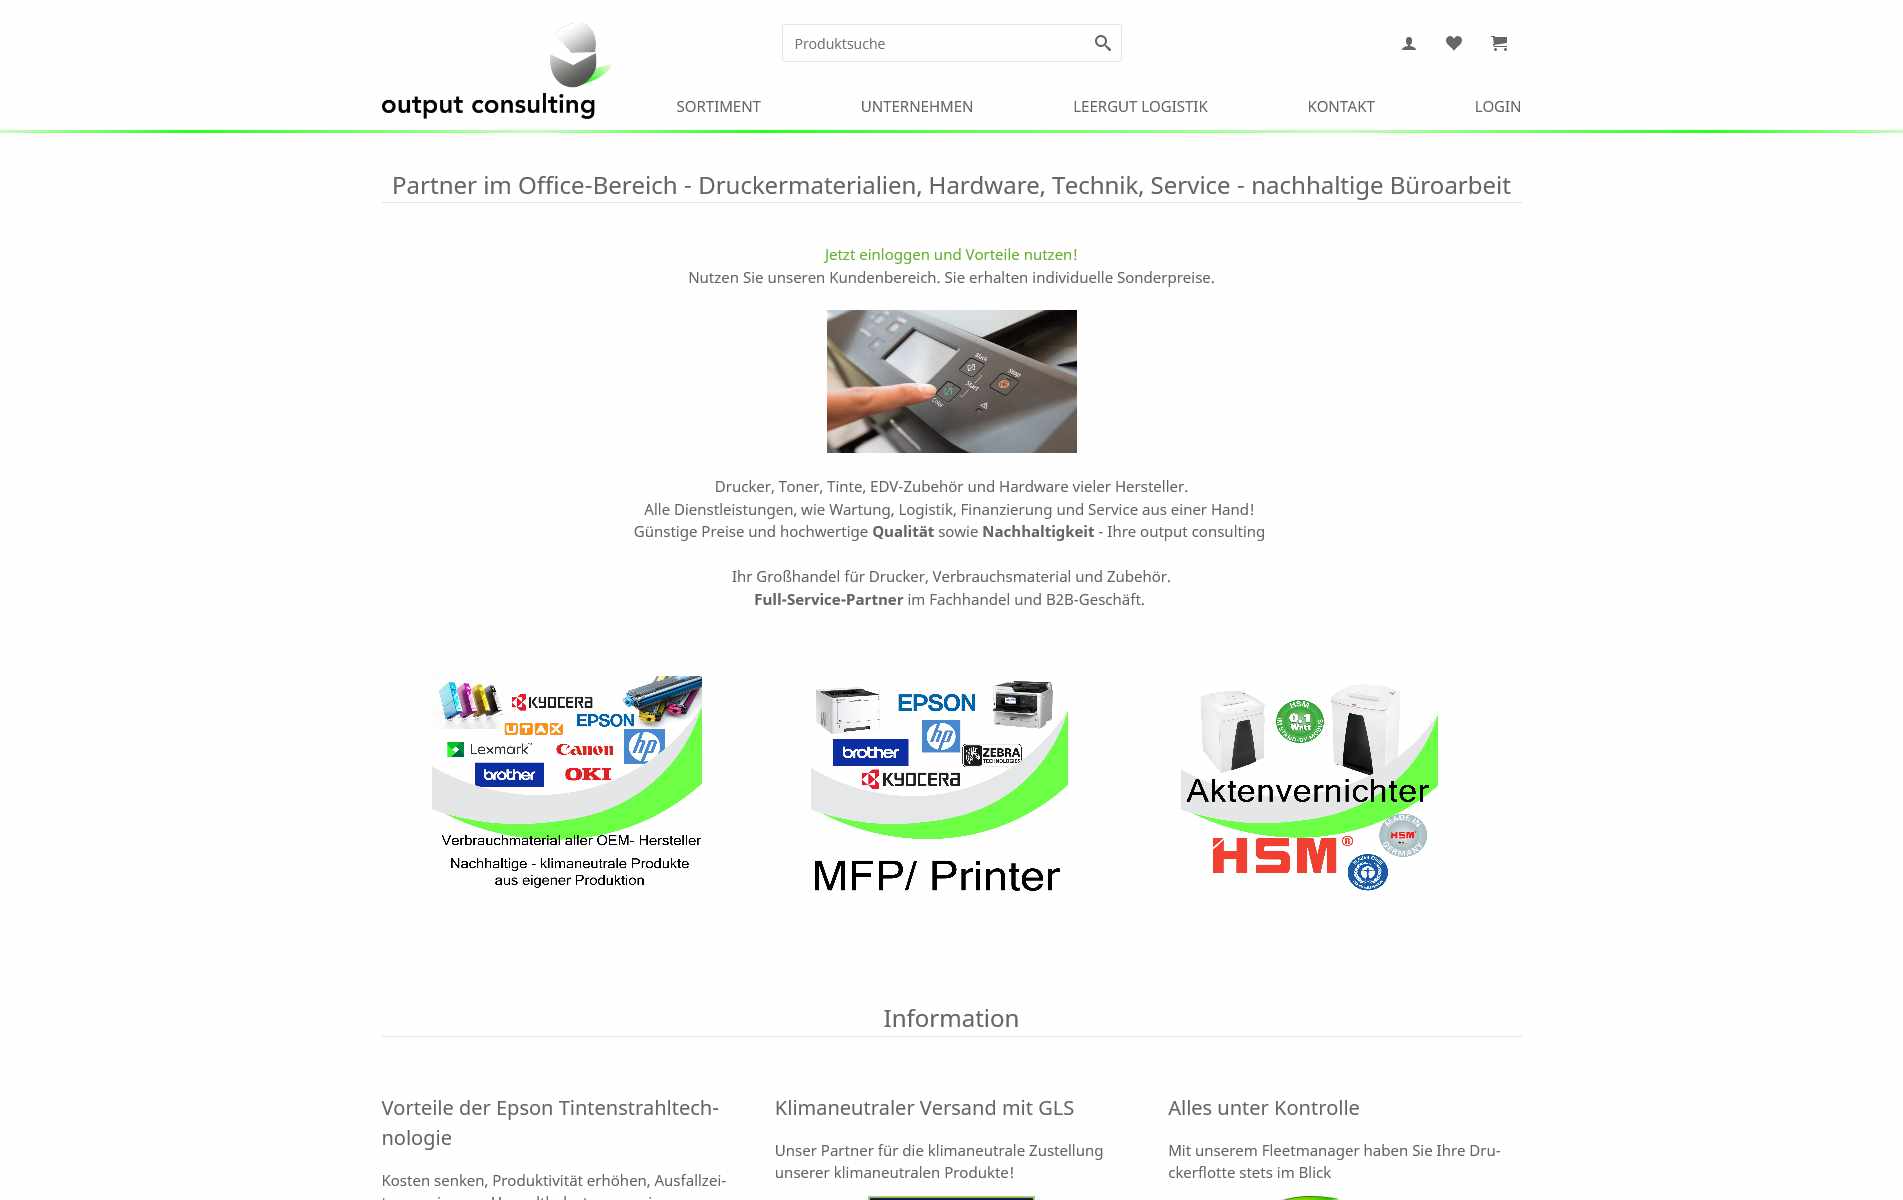 Bild: myfactory-Shop- und Website-Template für die output consulting GmbH